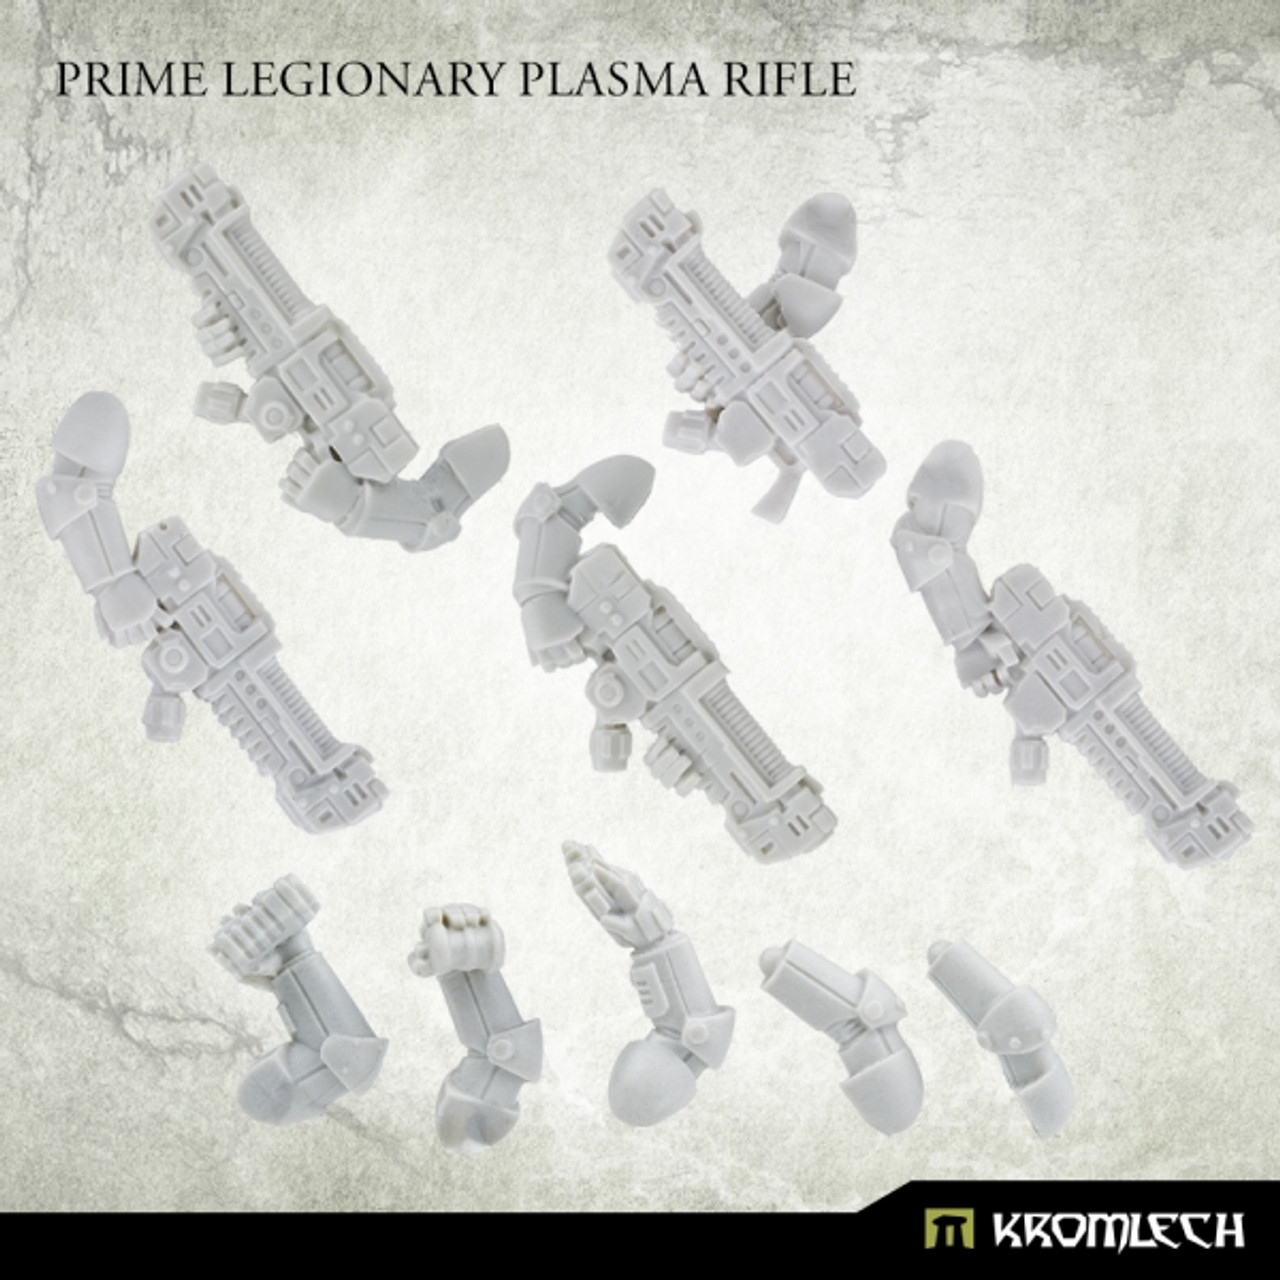 Prime Legionaries Plasma Rifles (5) - KRCB256